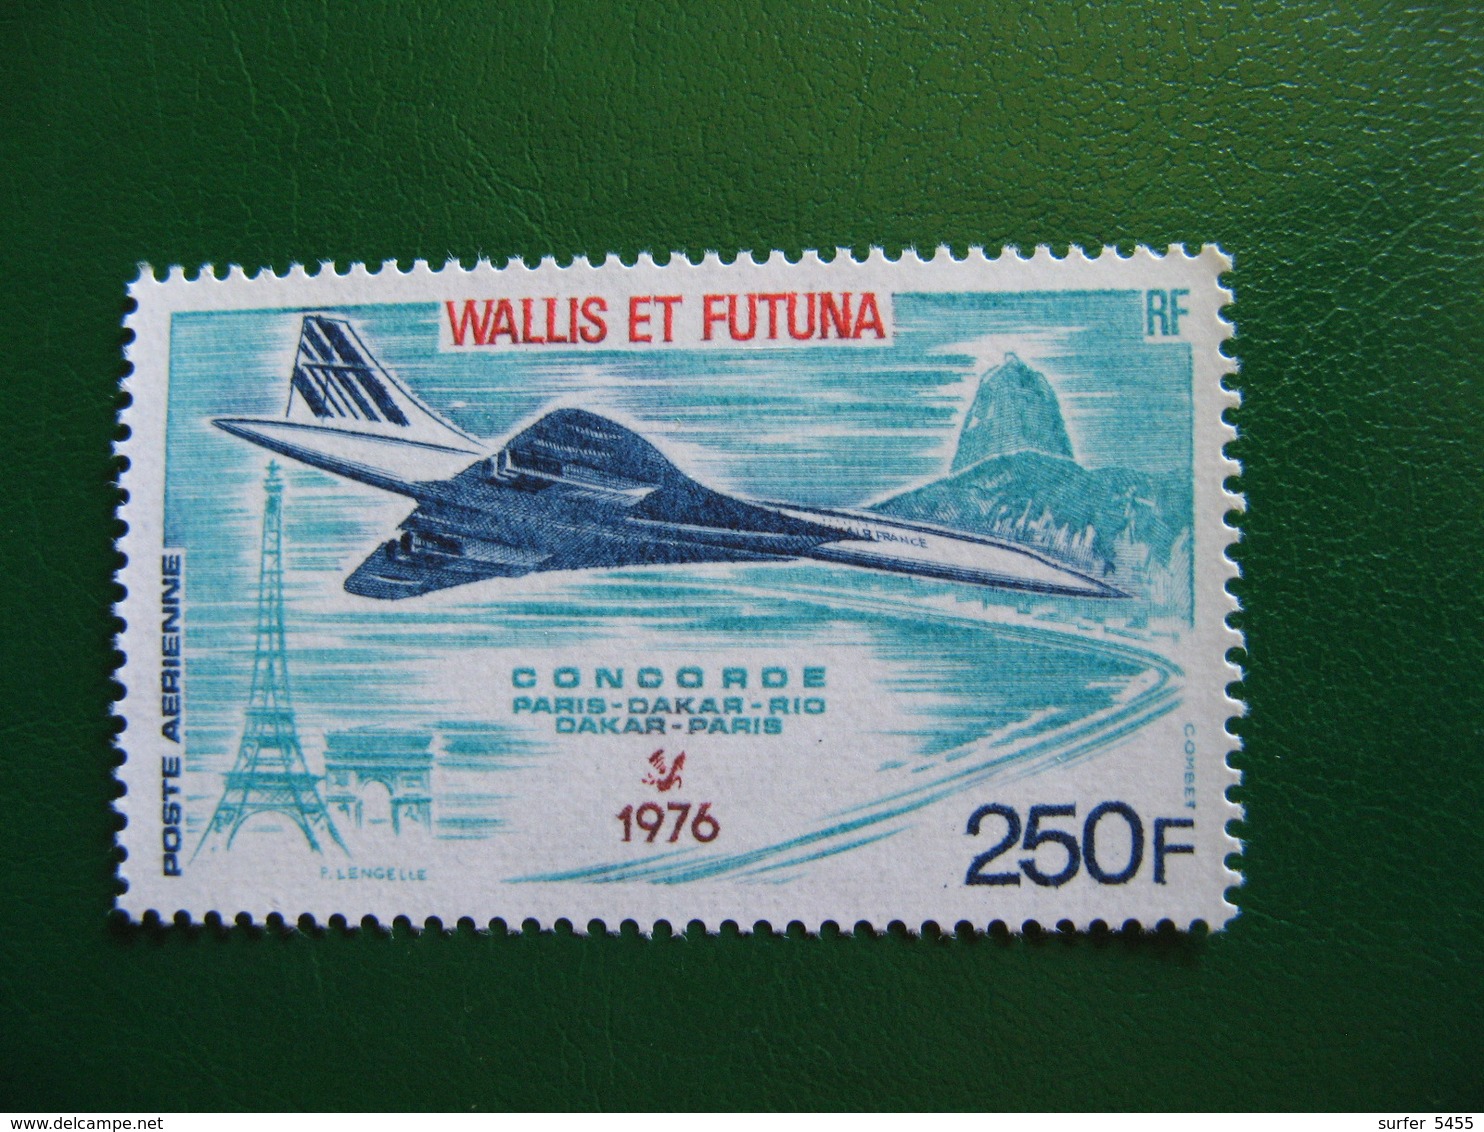 WALLIS YVERT POSTE AERIENNE N° 71 NEUF** LUXE COTE 31,00 EUROS - Unused Stamps